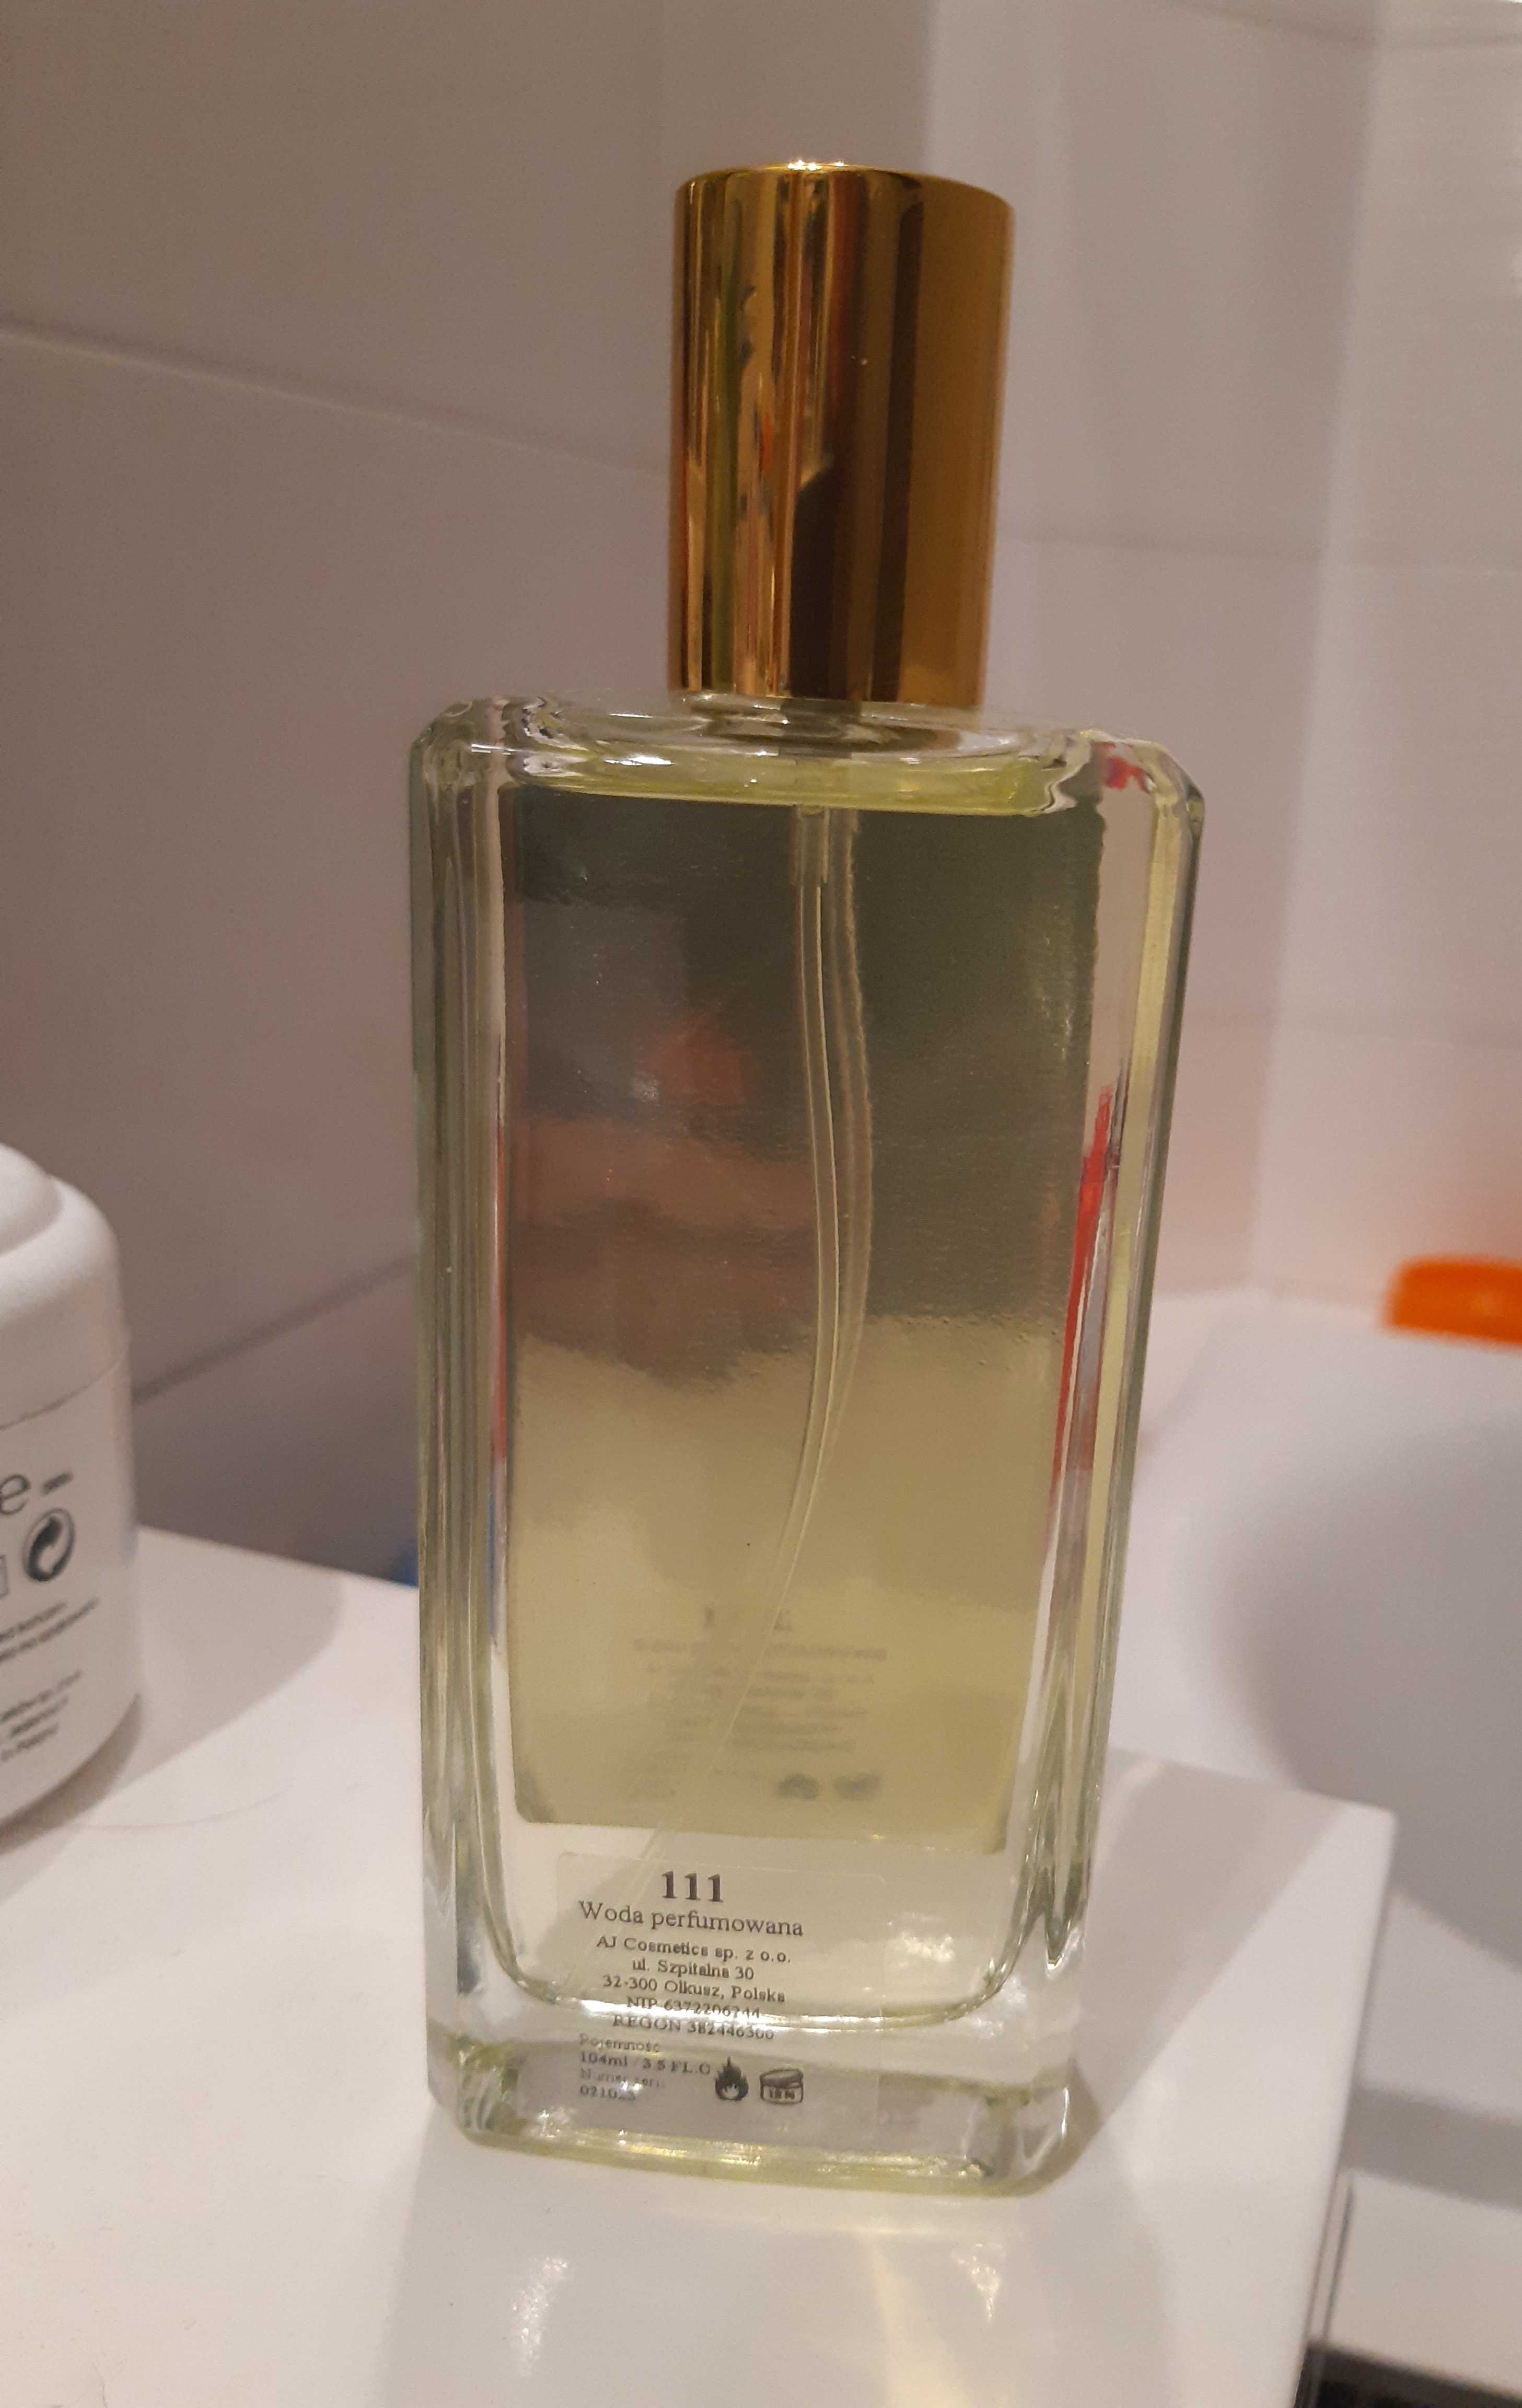 Woda perfumowana inspirowana zapachem Gucci Bamboo - 104 ml